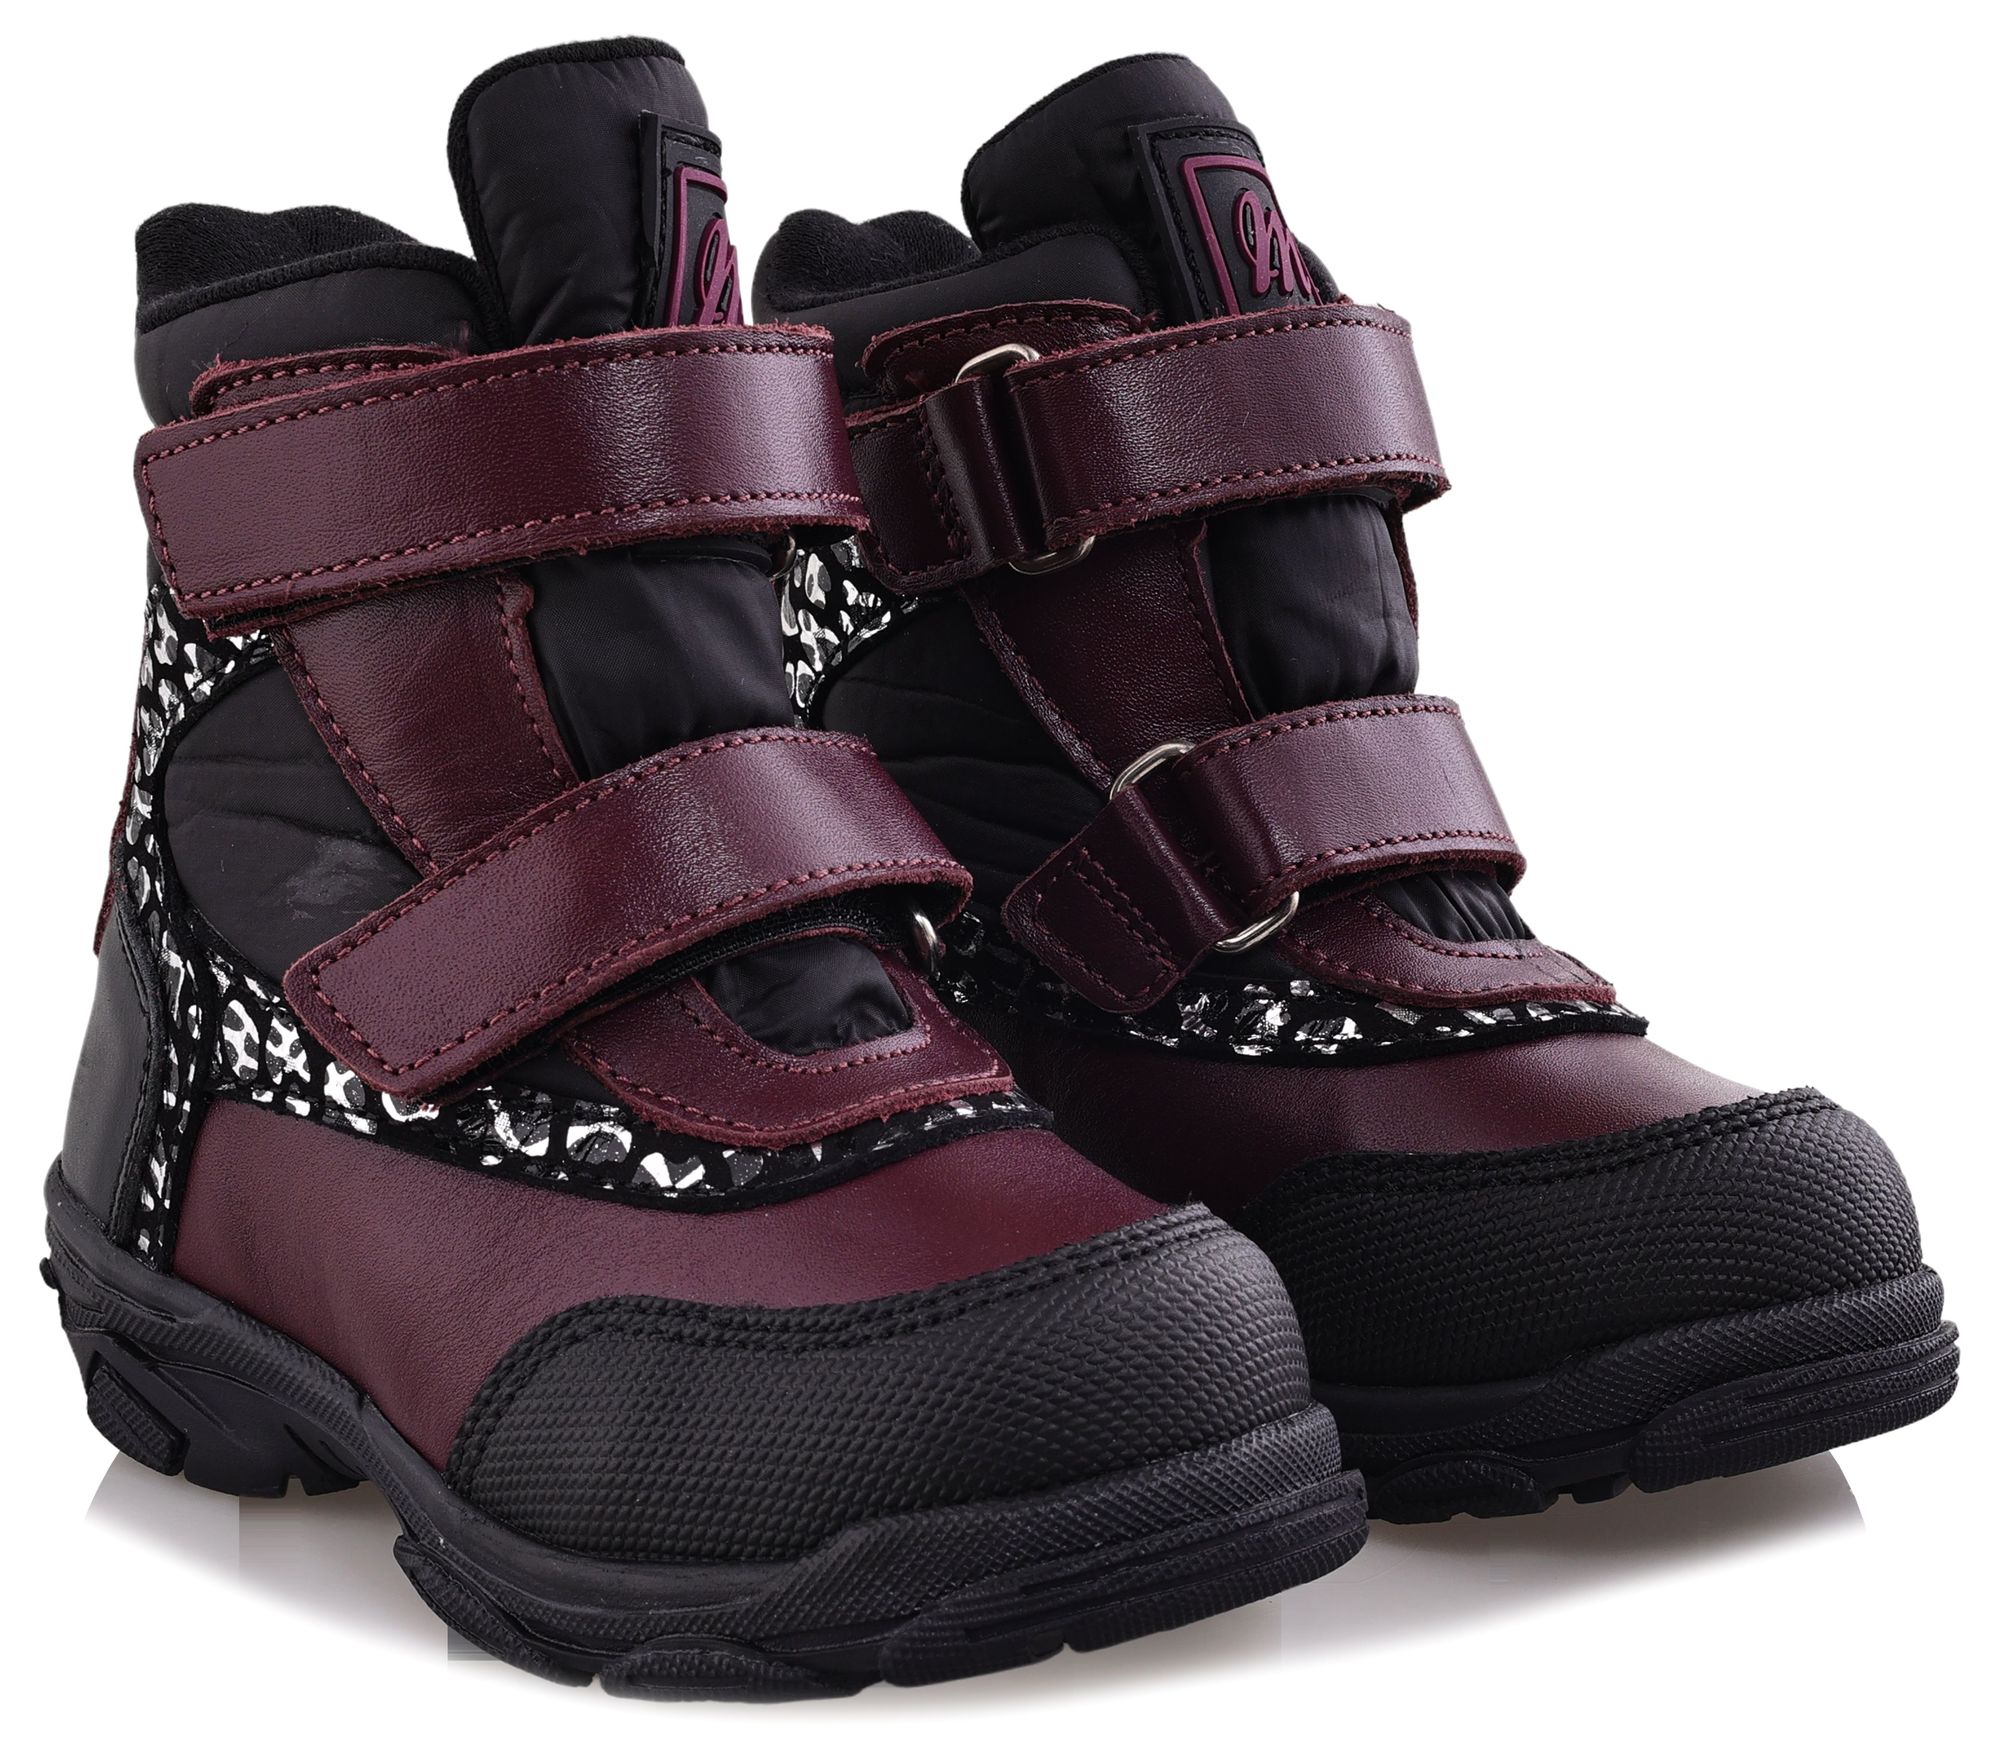 Ботинки Minimen для девочек, бордовые, размер 26, 2655-53-23B-03 minimen ботинки зимние 2187